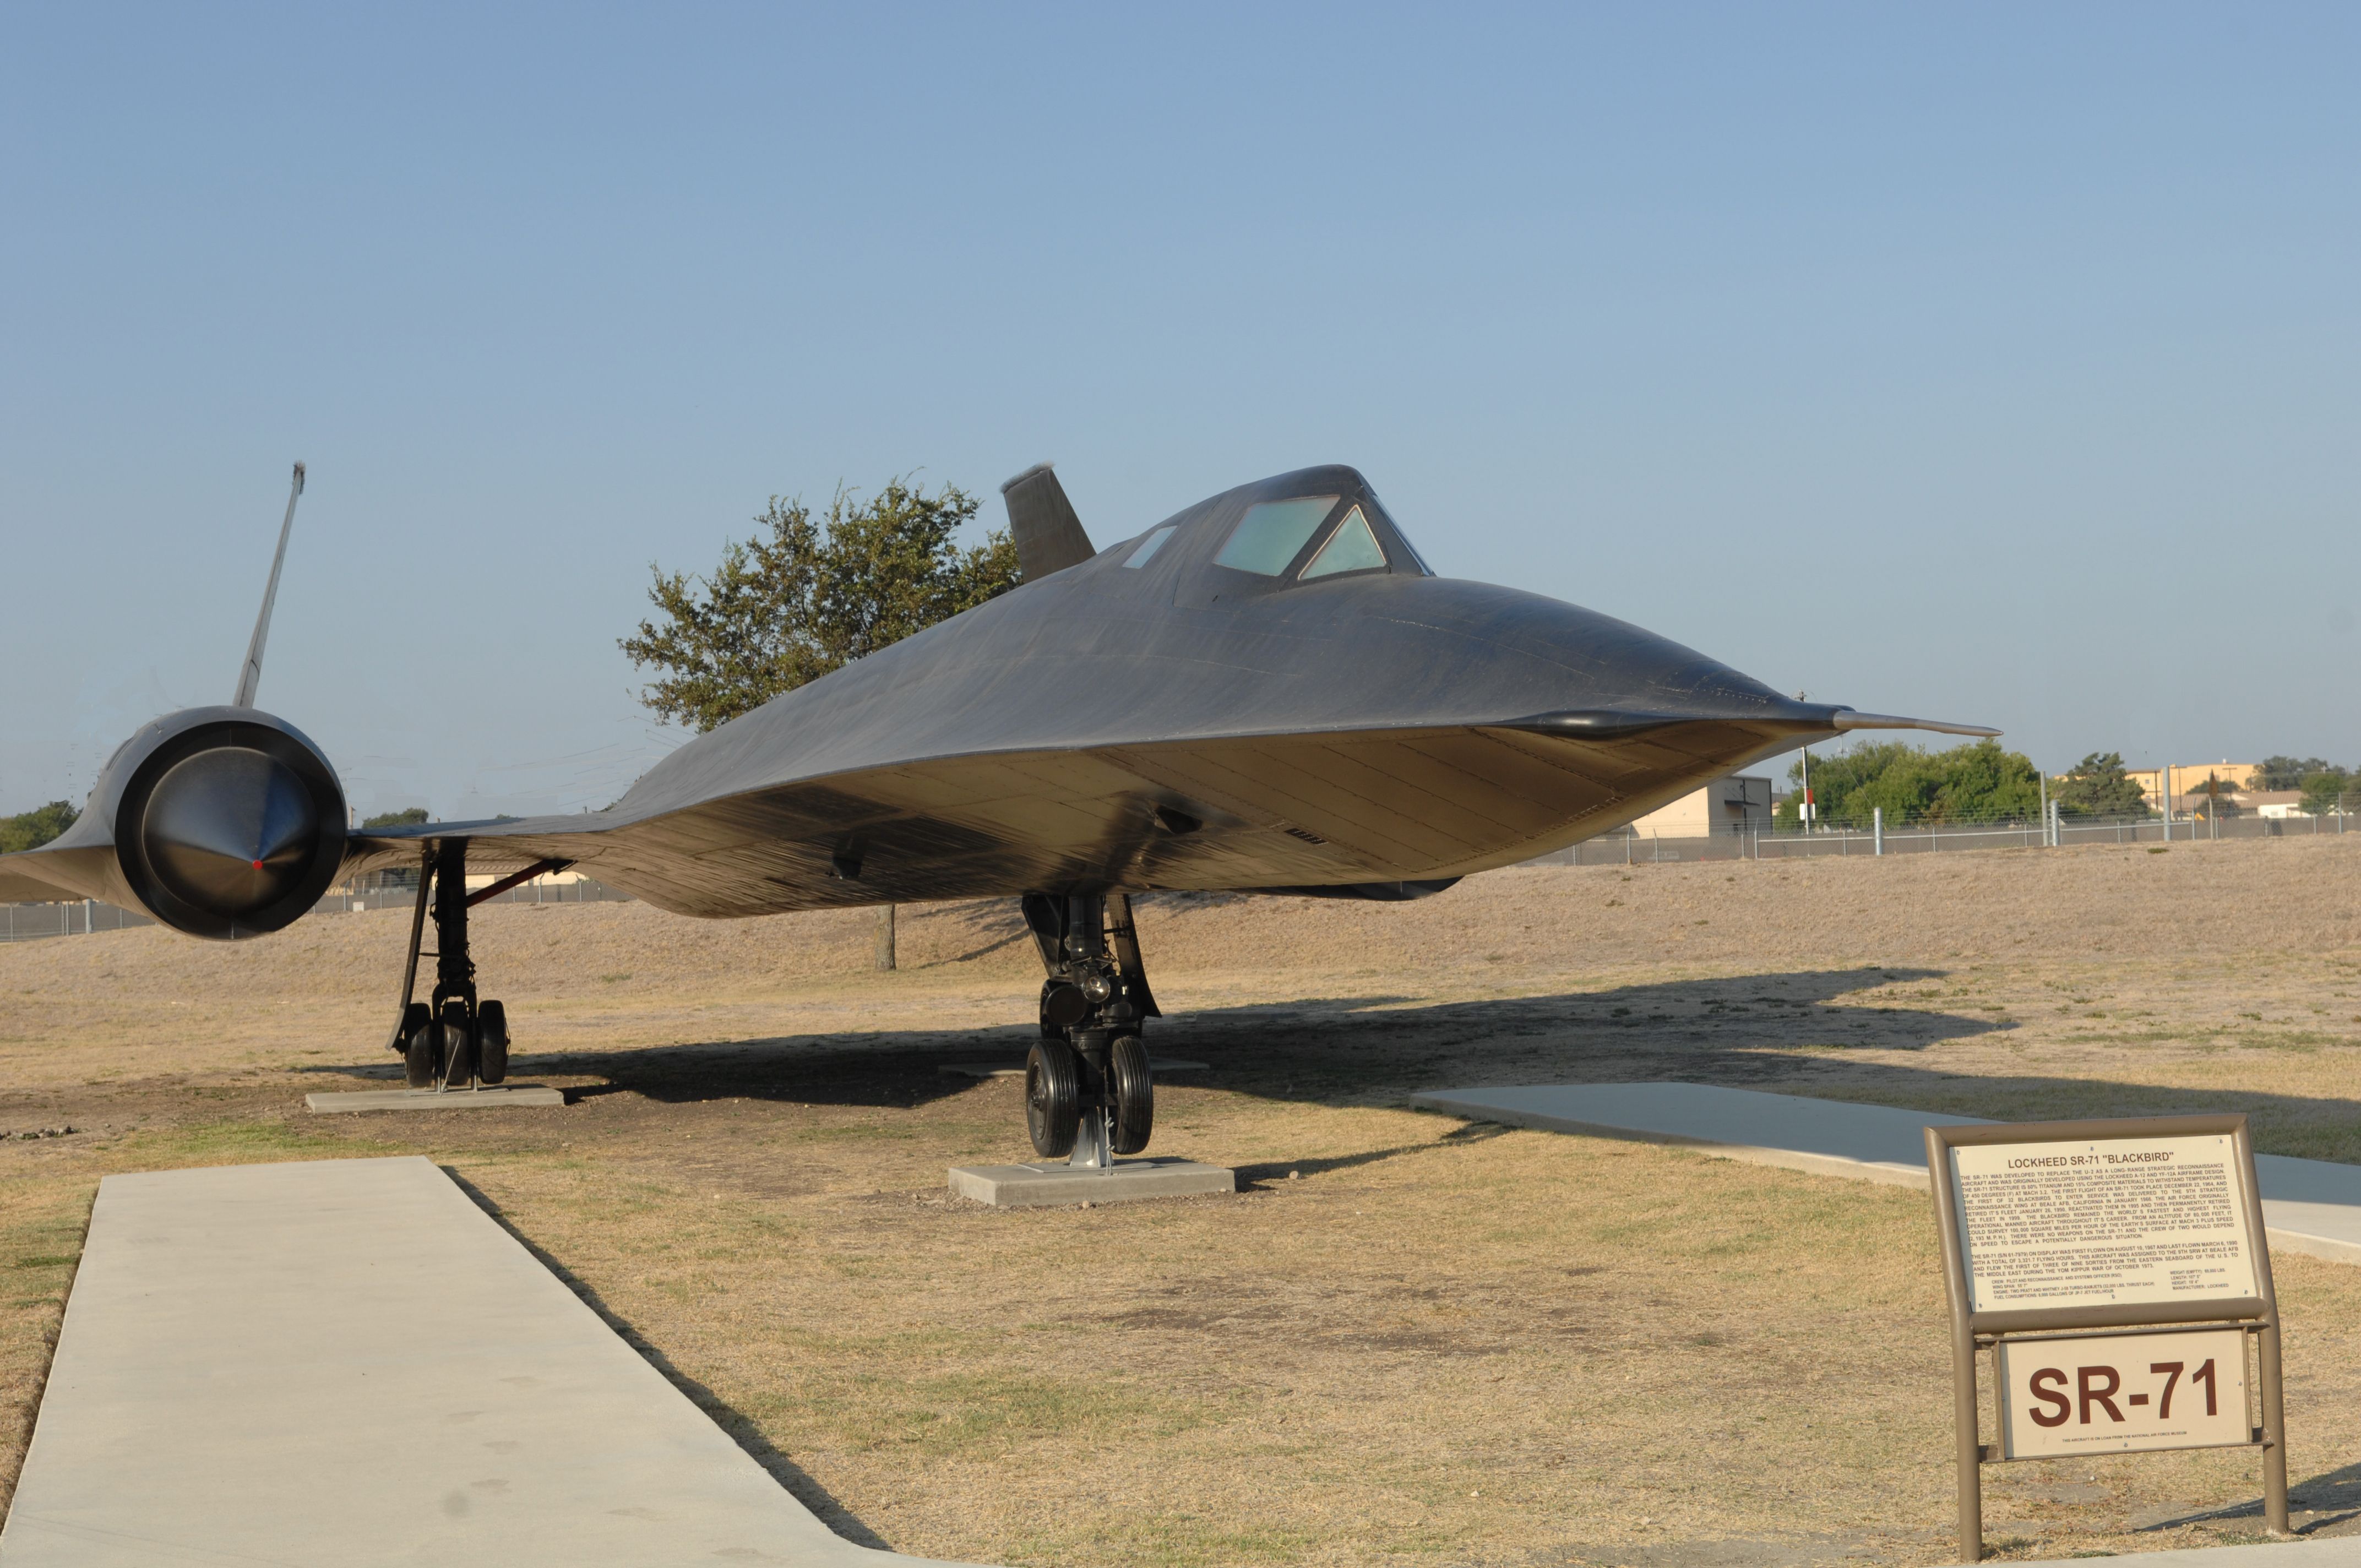 A Lockheed SR-71 Blackbird on display in Texas.